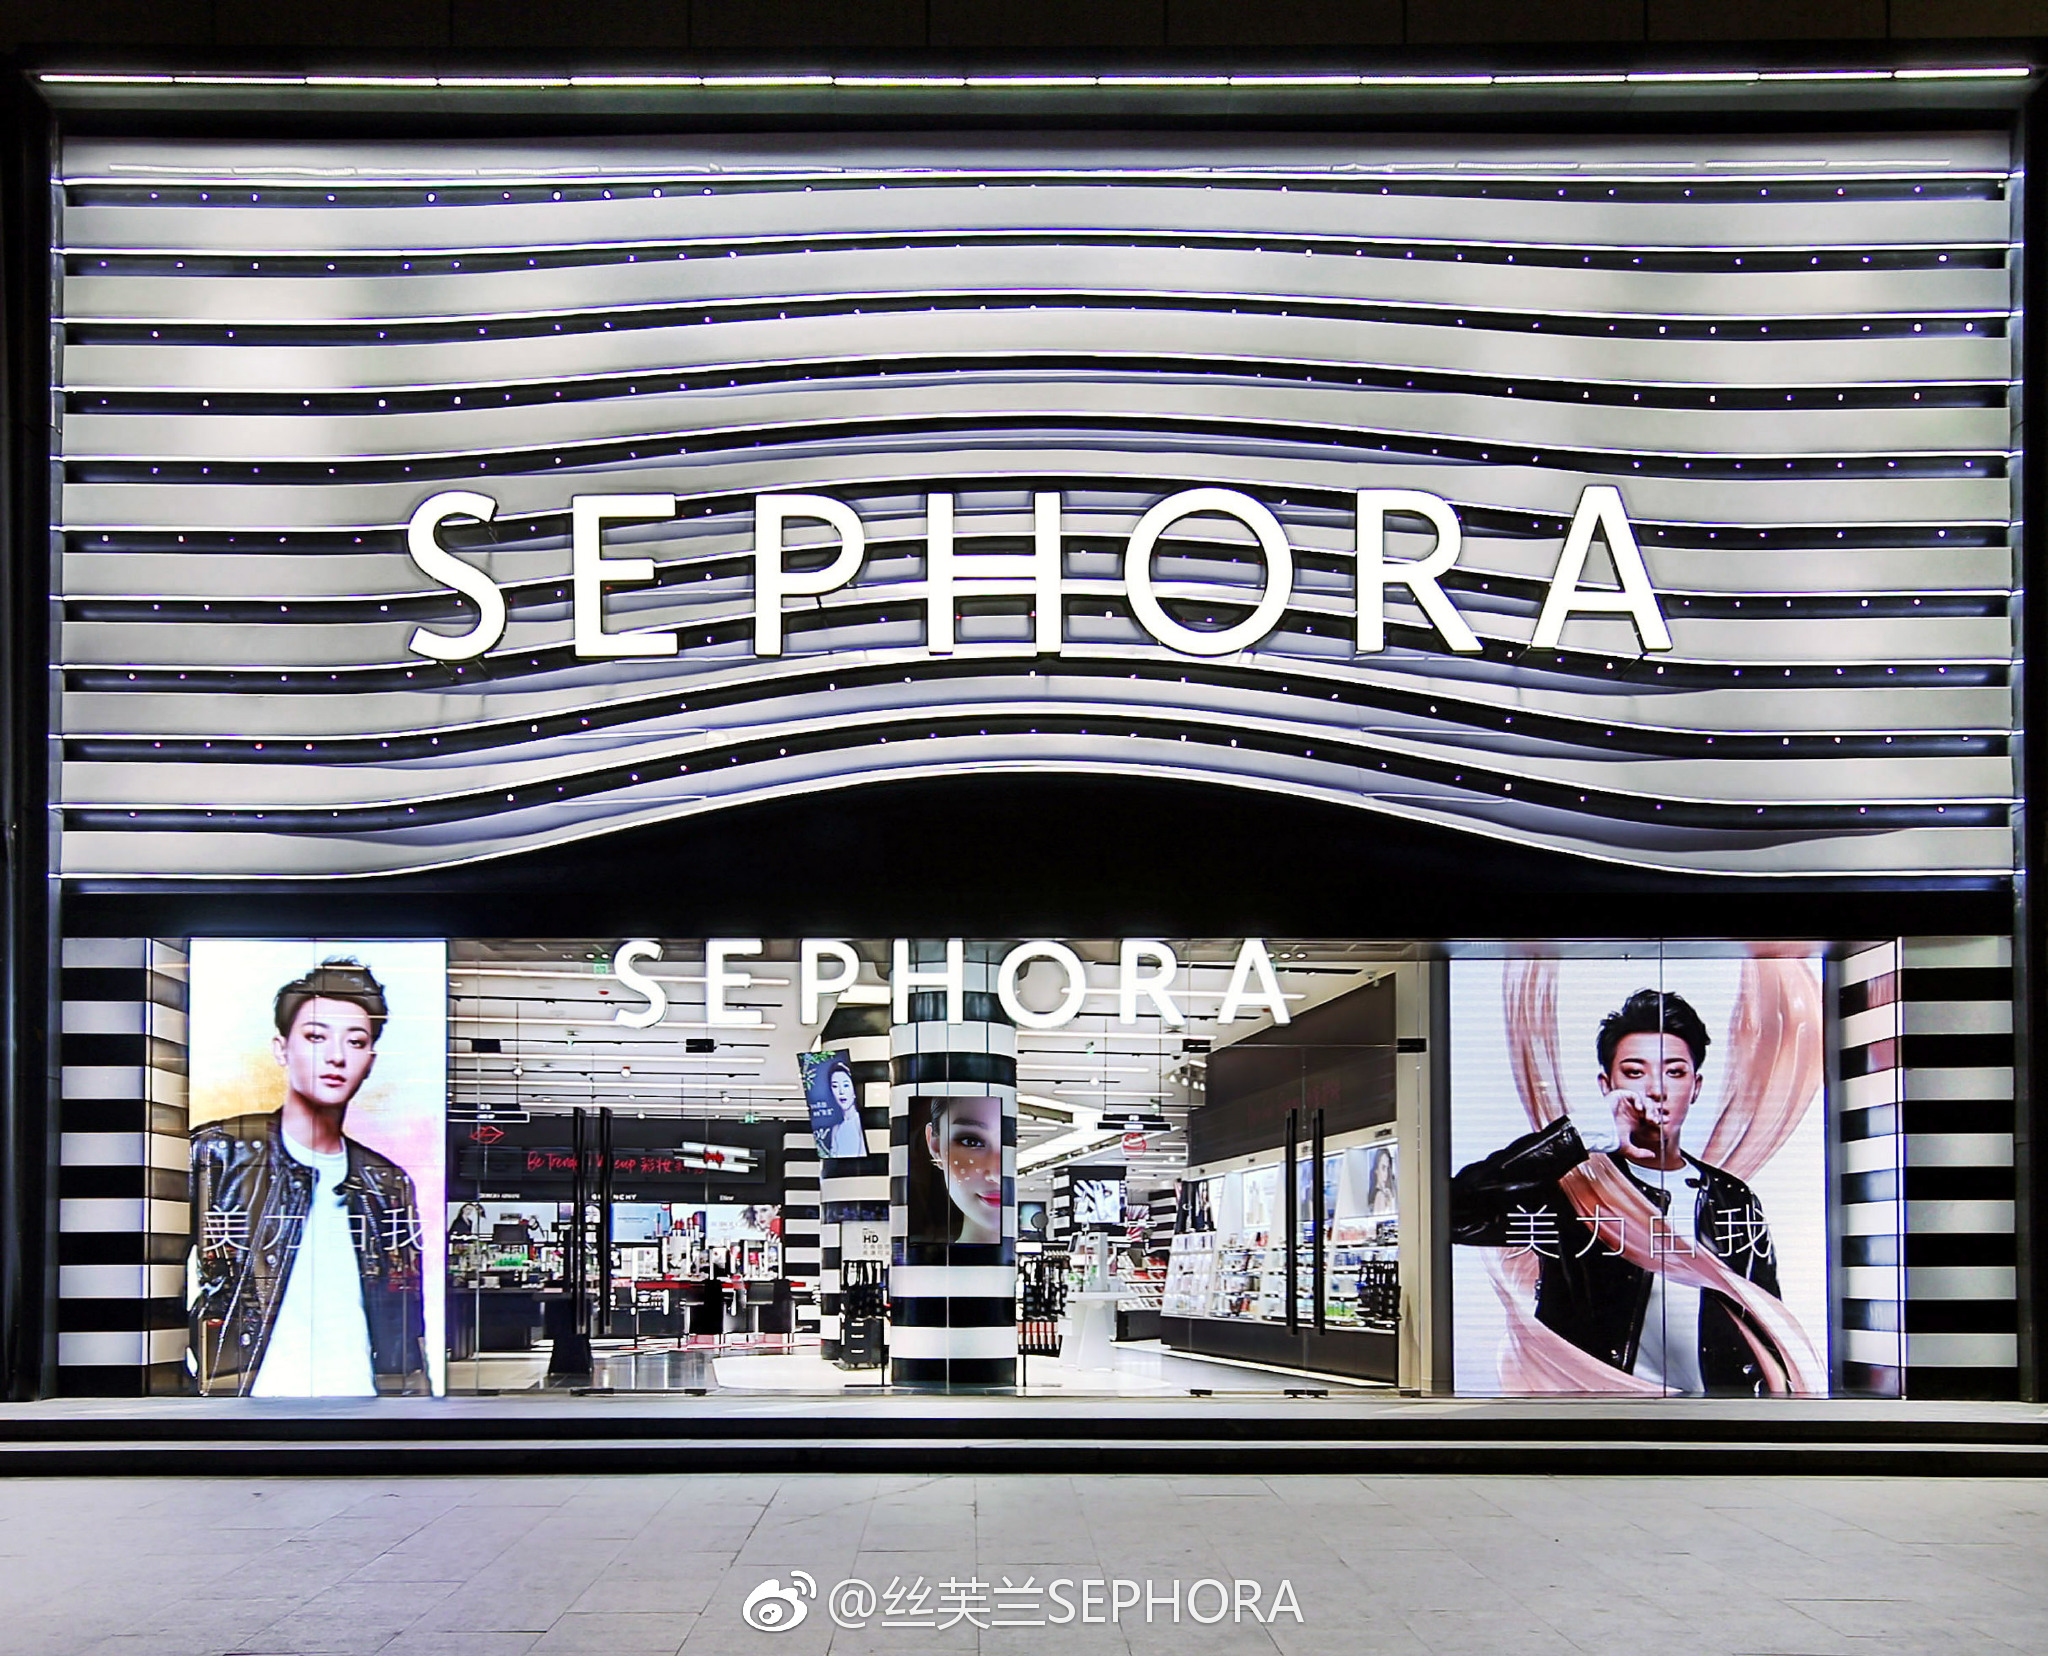 「セフォラ」が中国に222店舗、中国マーケットで急拡大